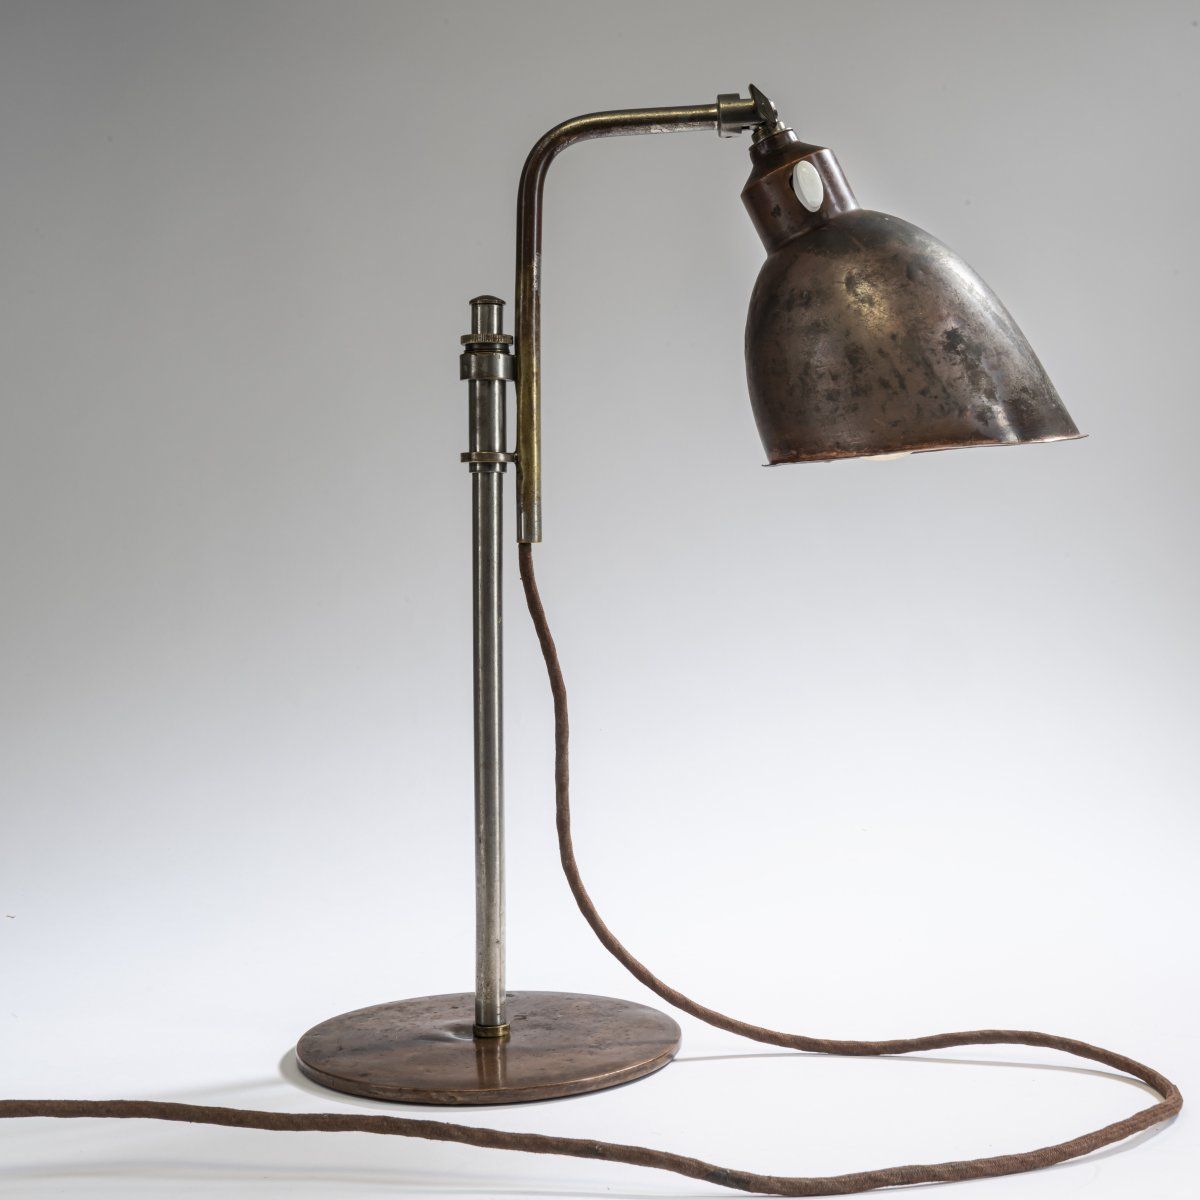 Null Christian Dell, Petite lampe de table 'Rondella', 1927/28, H. 40 cm (max.),&hellip;